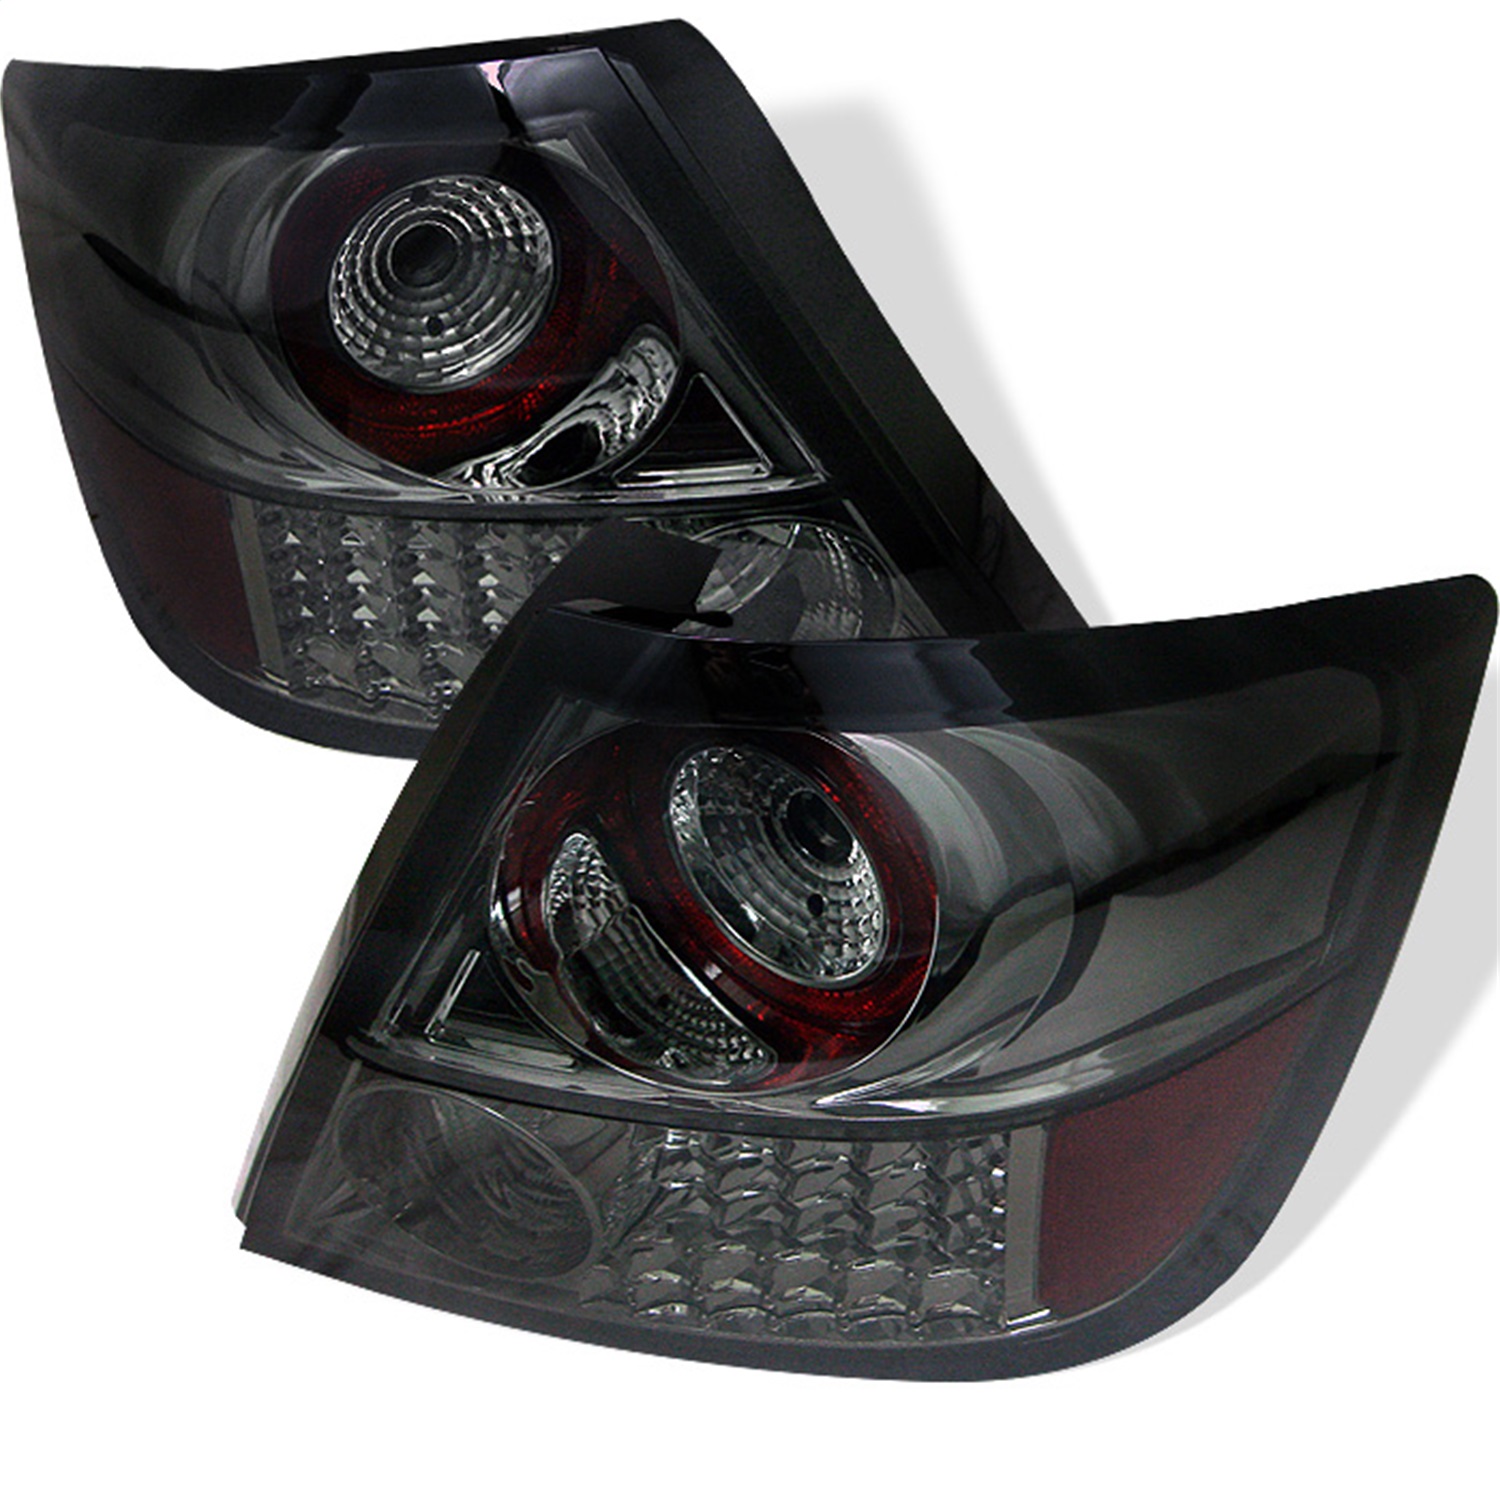 Spyder Auto 5007742 LED Tail Lights Fits 05-10 tC